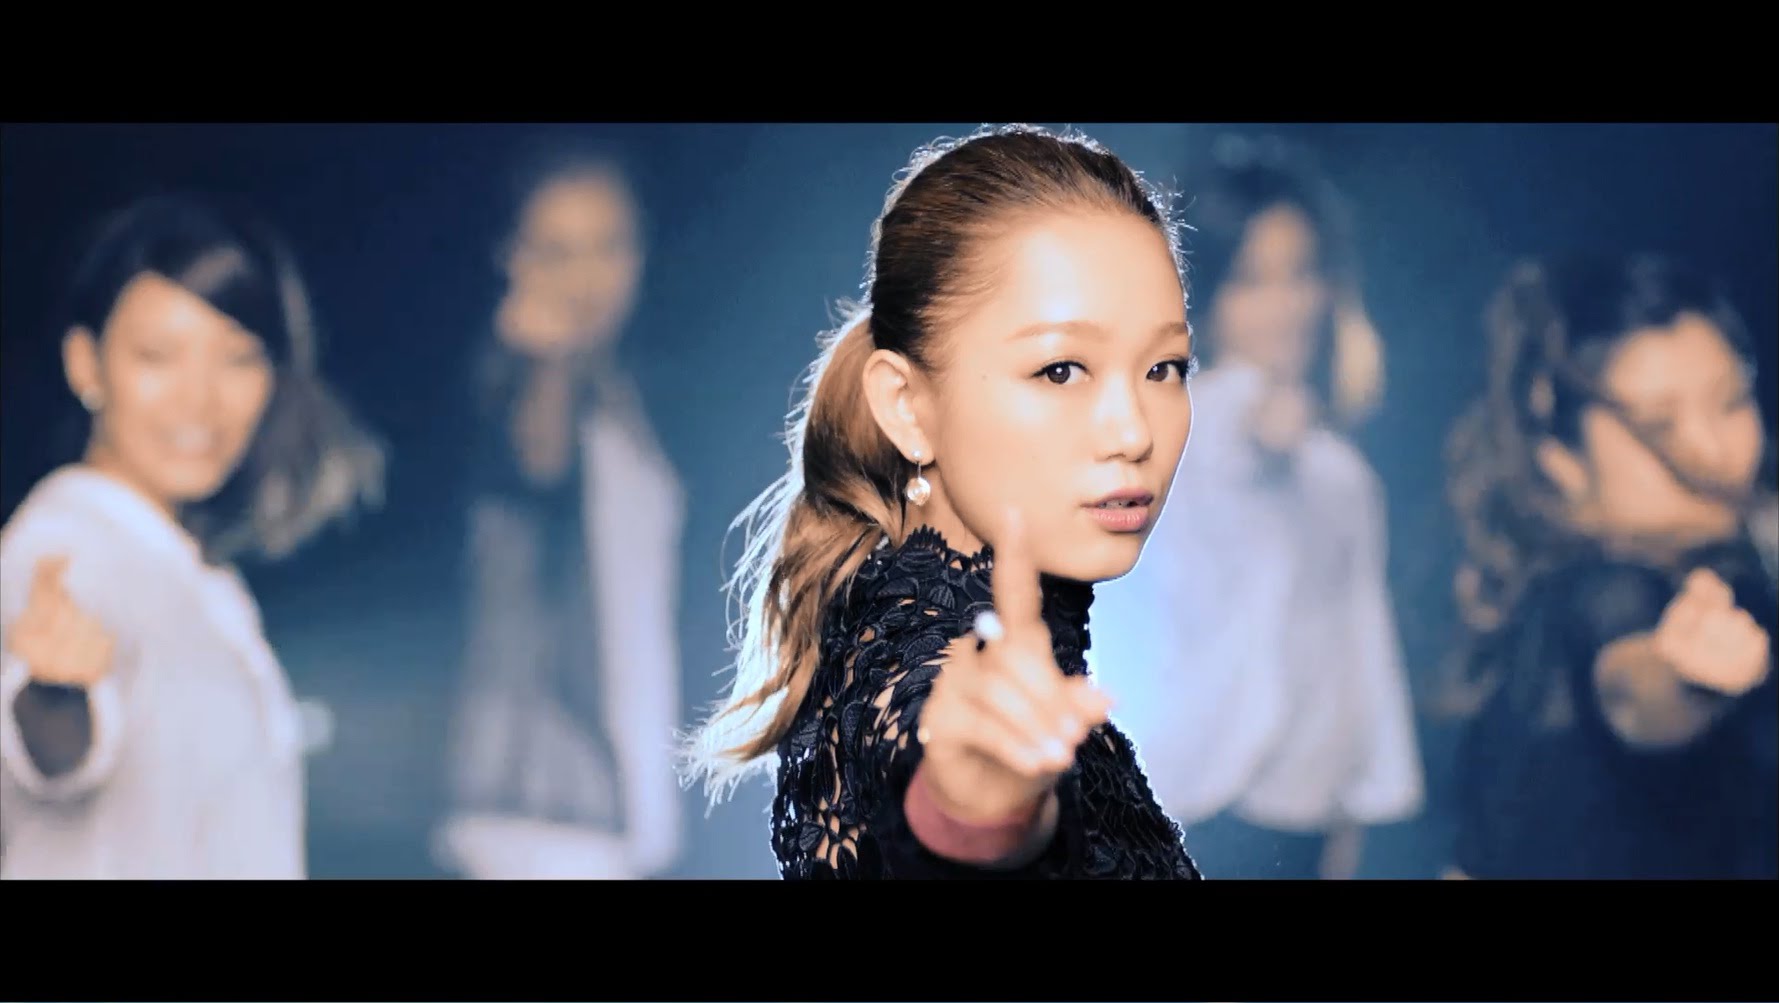 西野カナ 『No.1』MV(Short Ver.) - YouTube